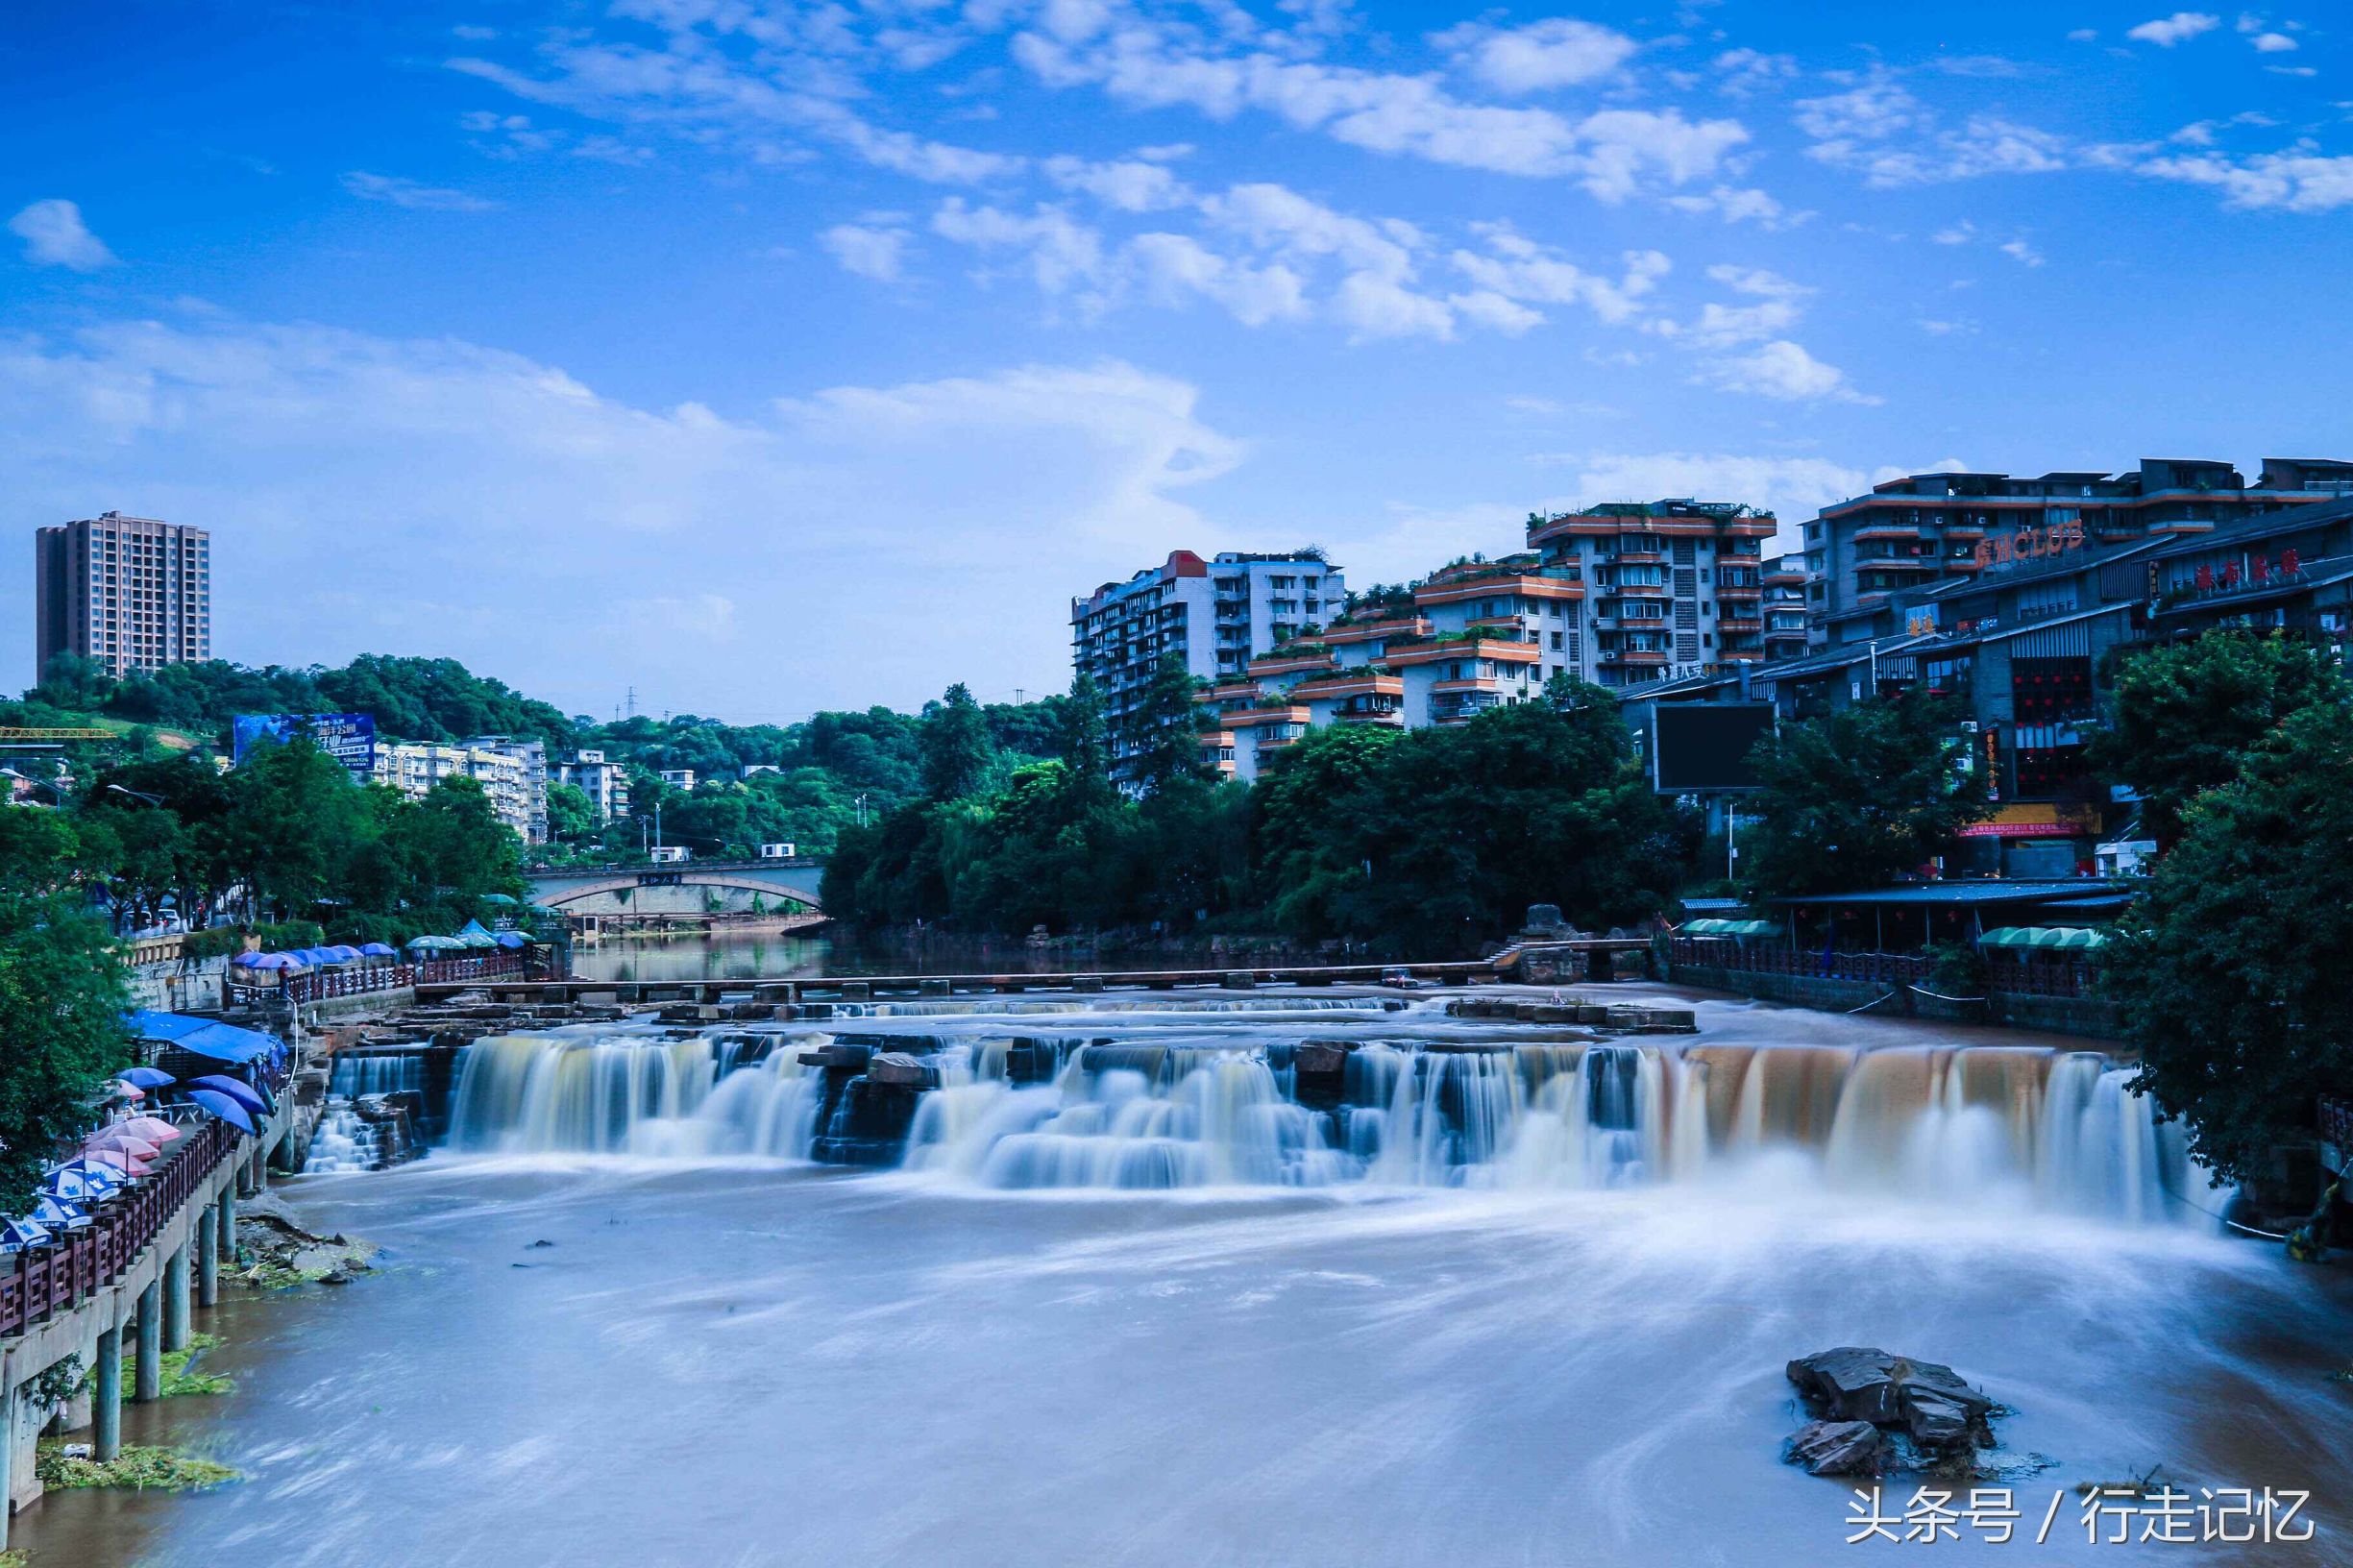 「原创」厚德影像:中国唯一城中天然瀑布——四川自贡